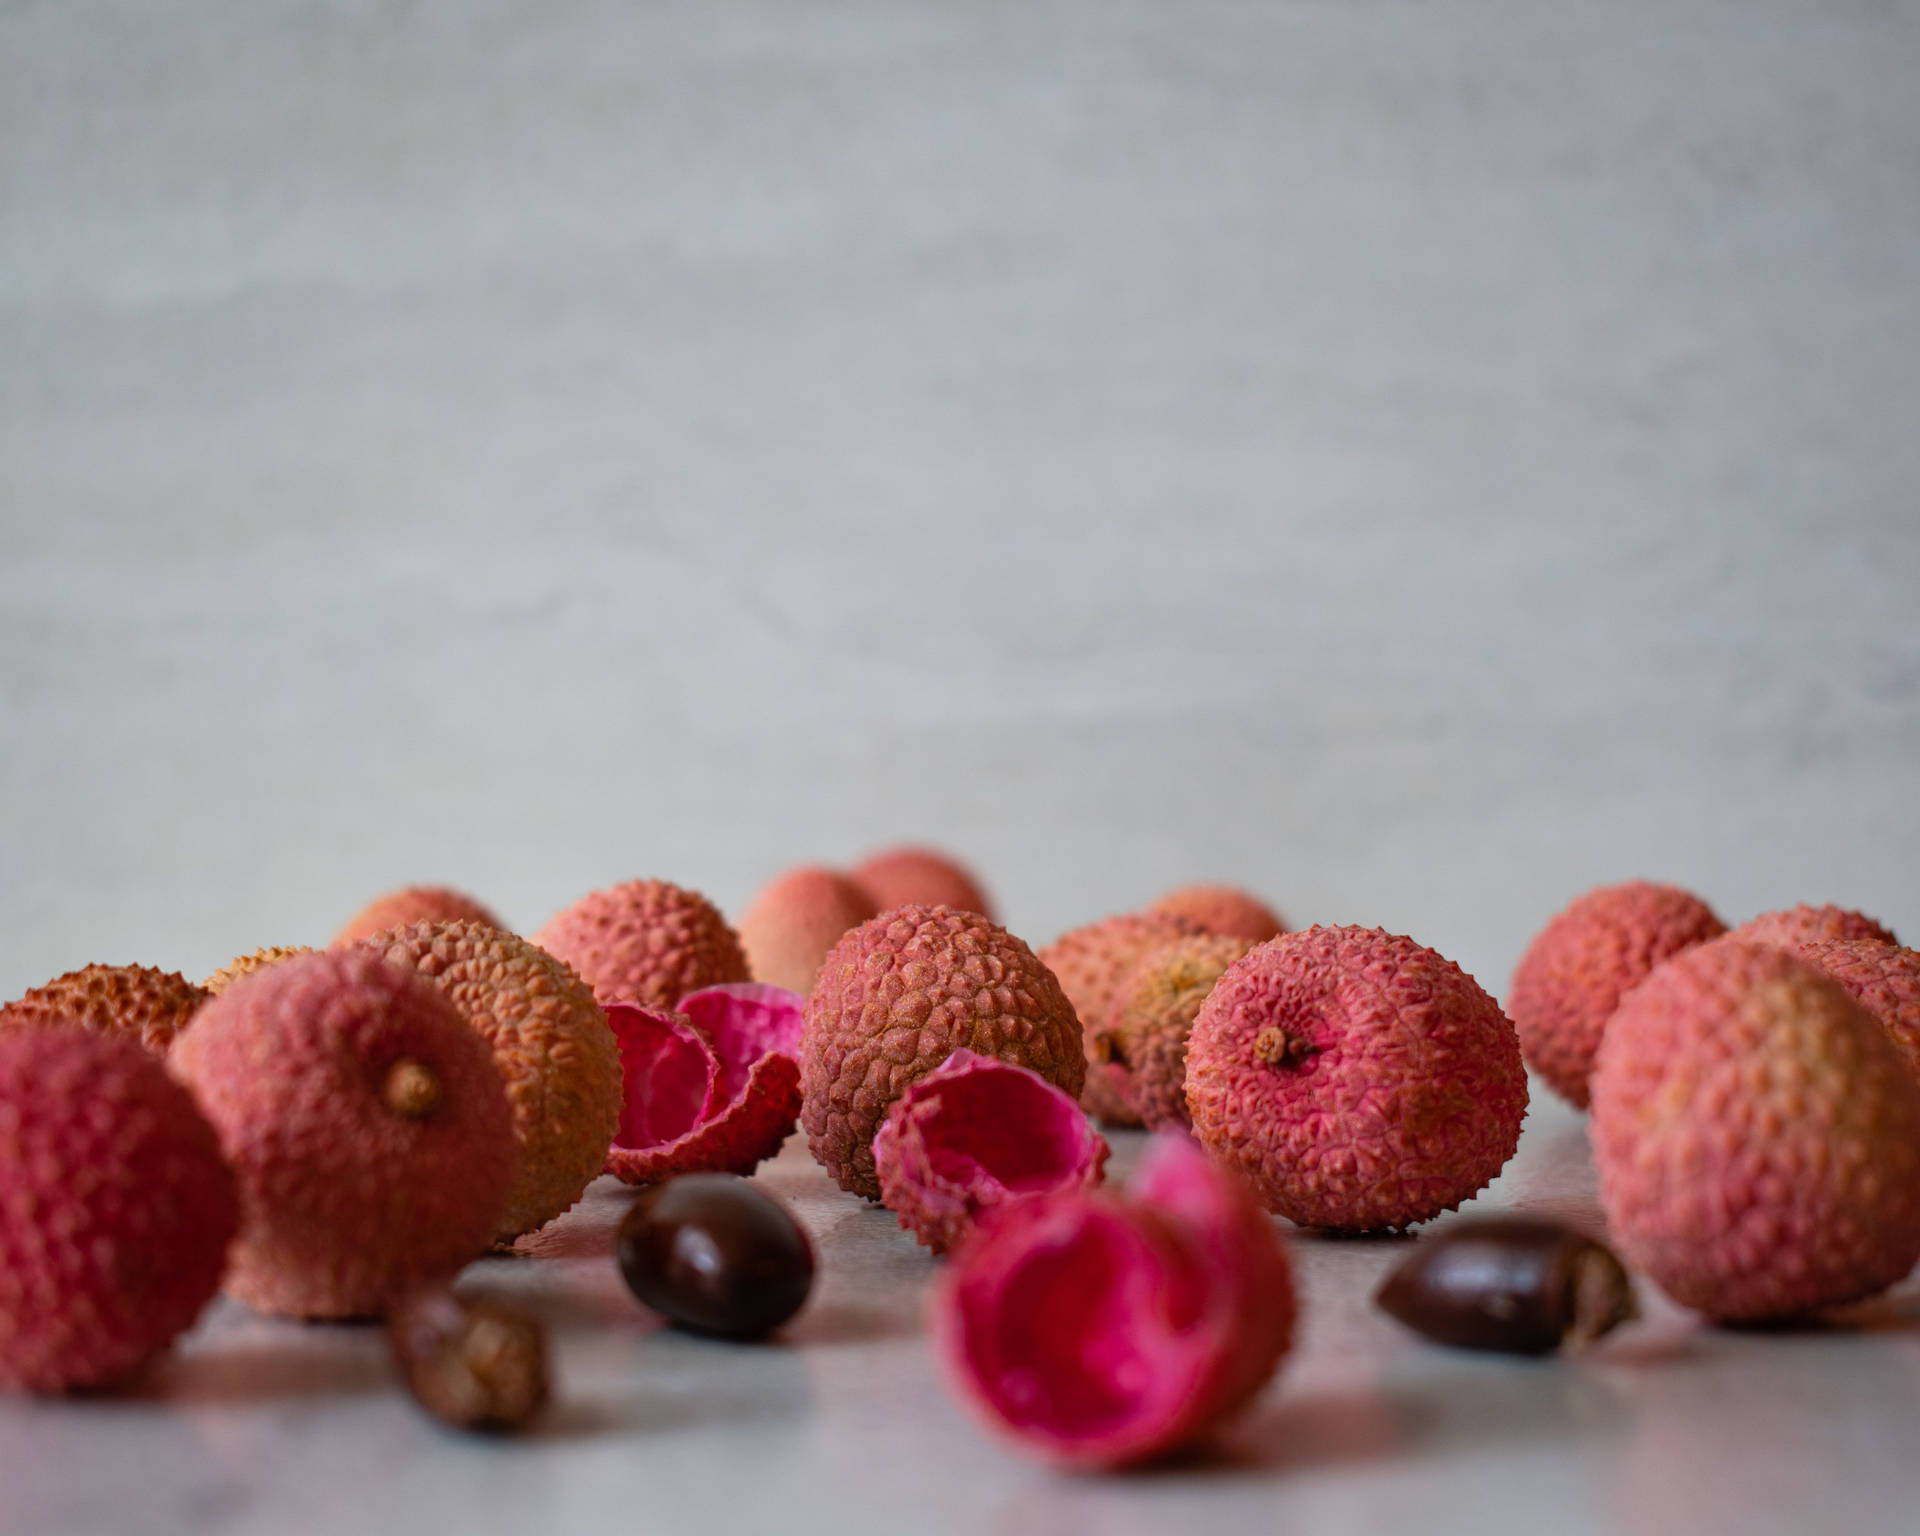 Pink Lychee Fruits Peelings And Seeds Wallpaper